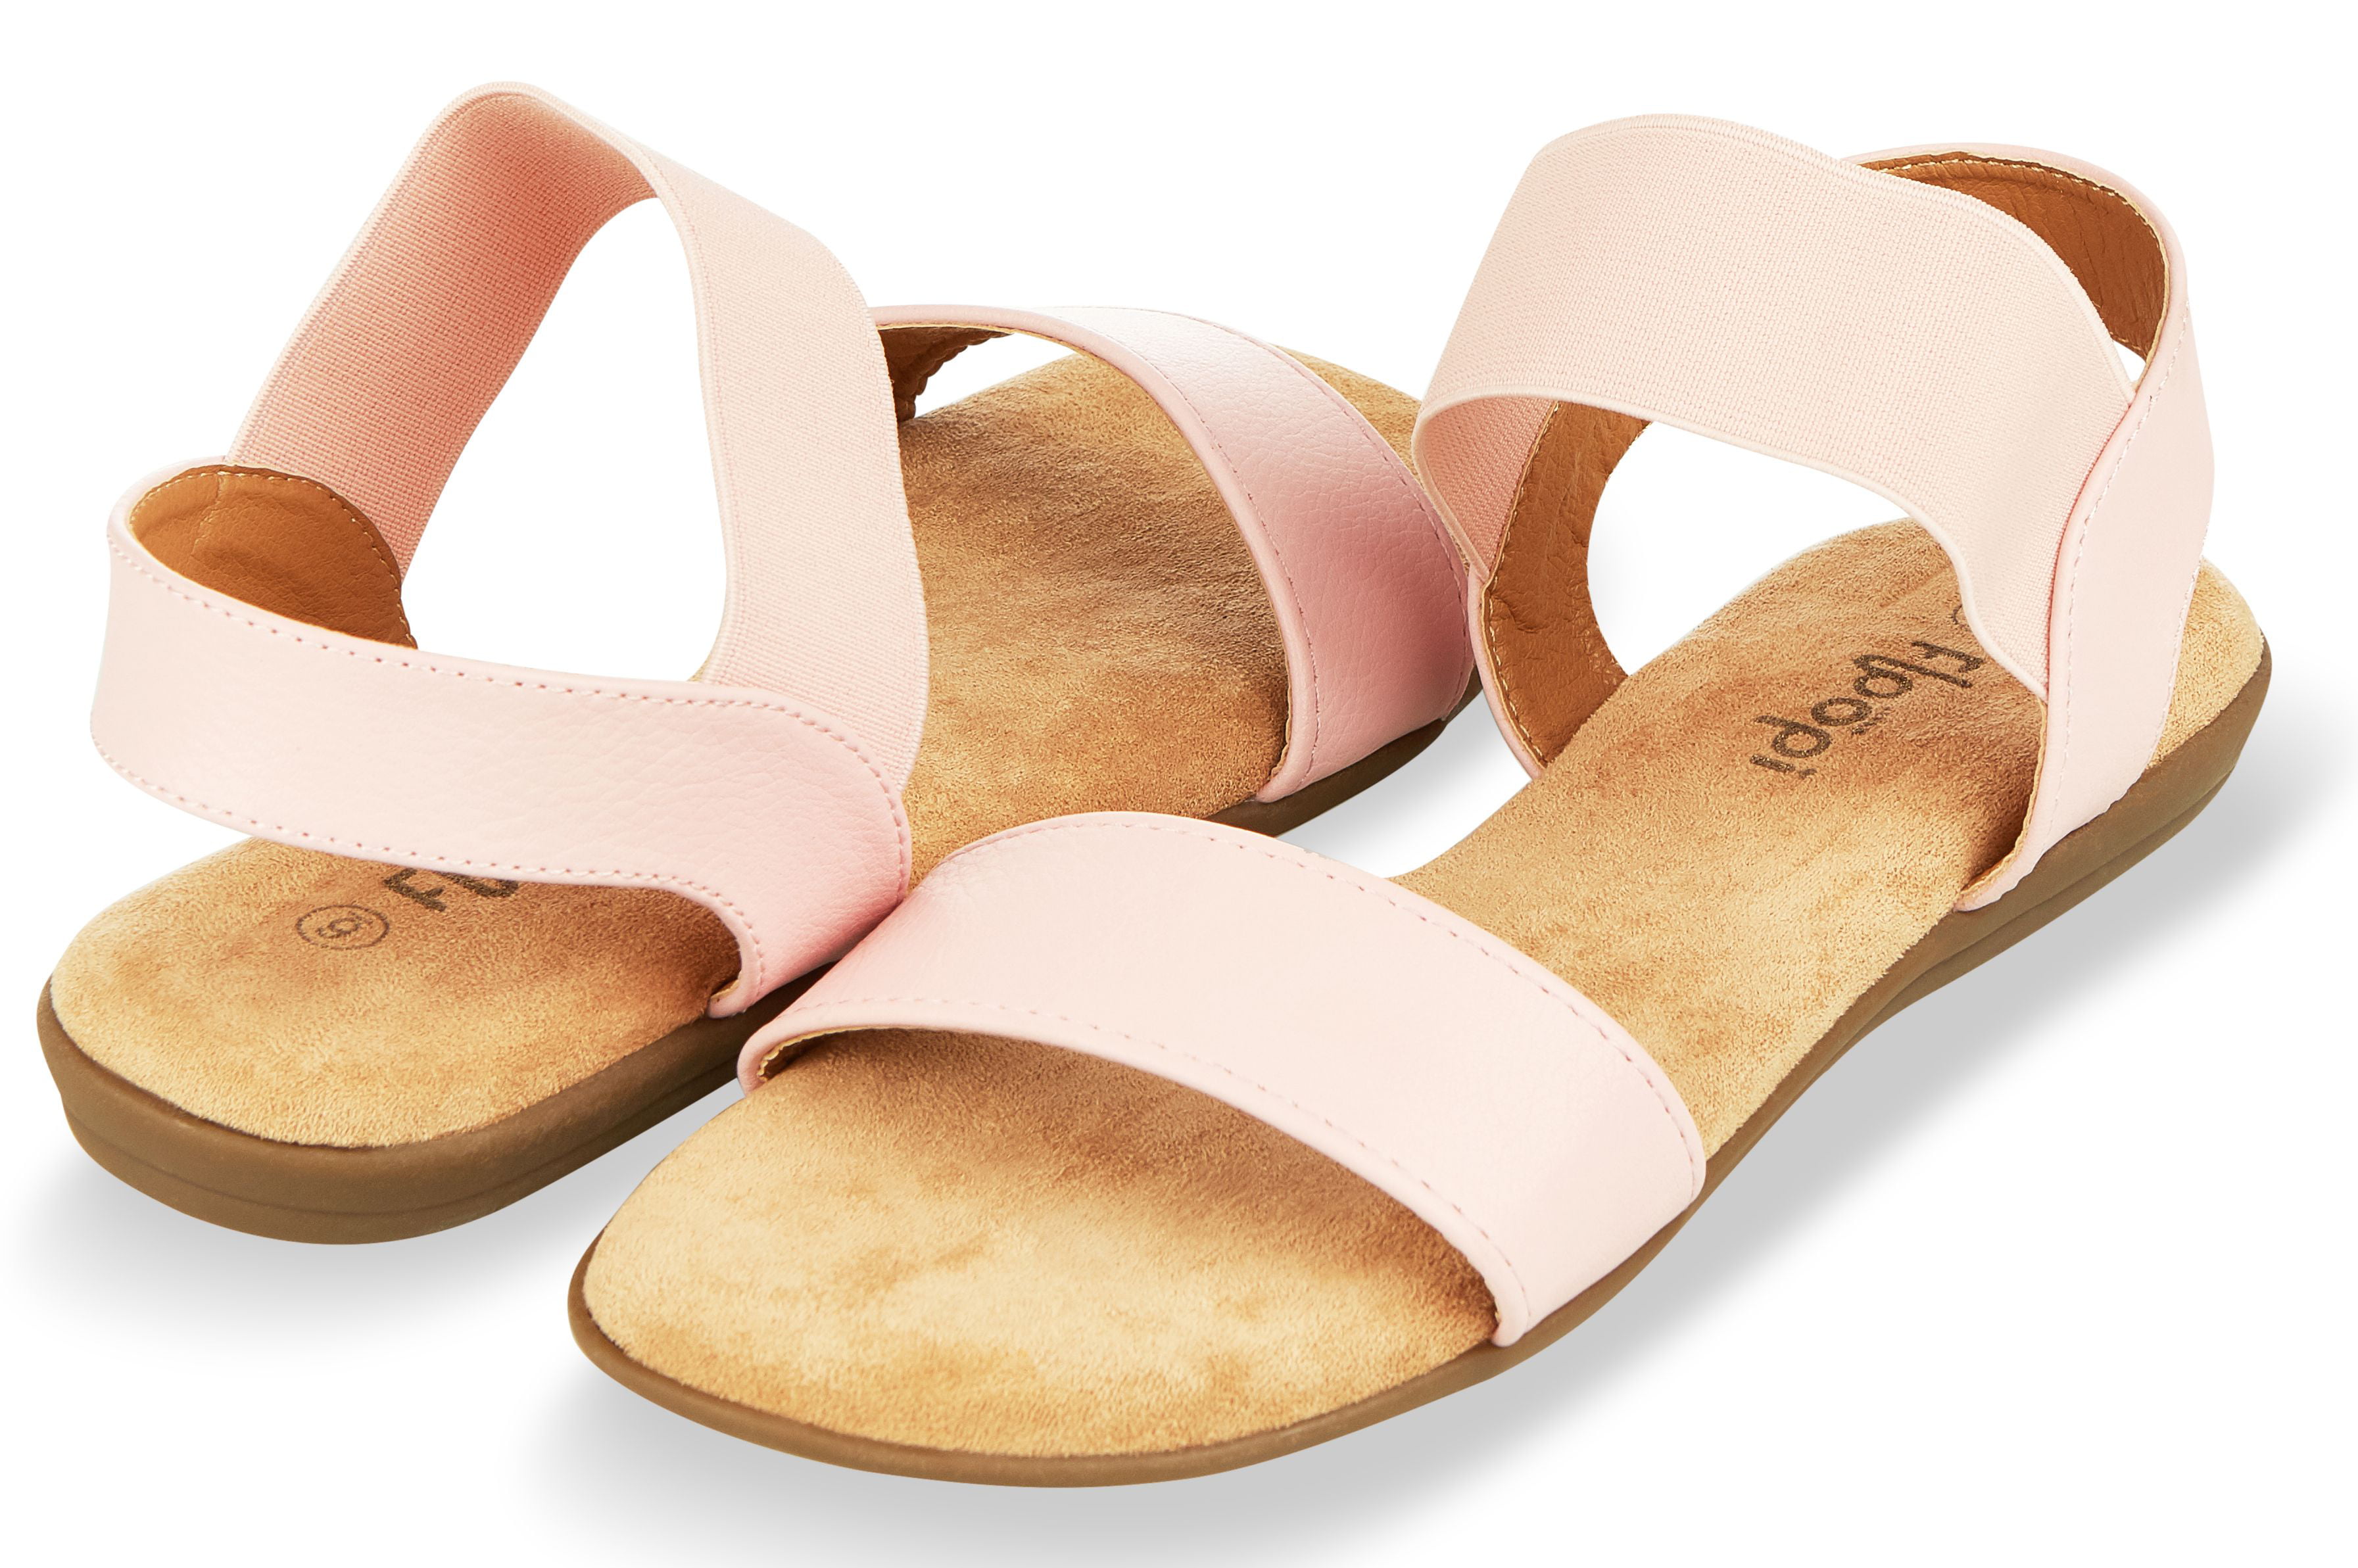 Floopi - Floopi Sandals for Women | Cute, Open Toe, Wide Elastic Design ...